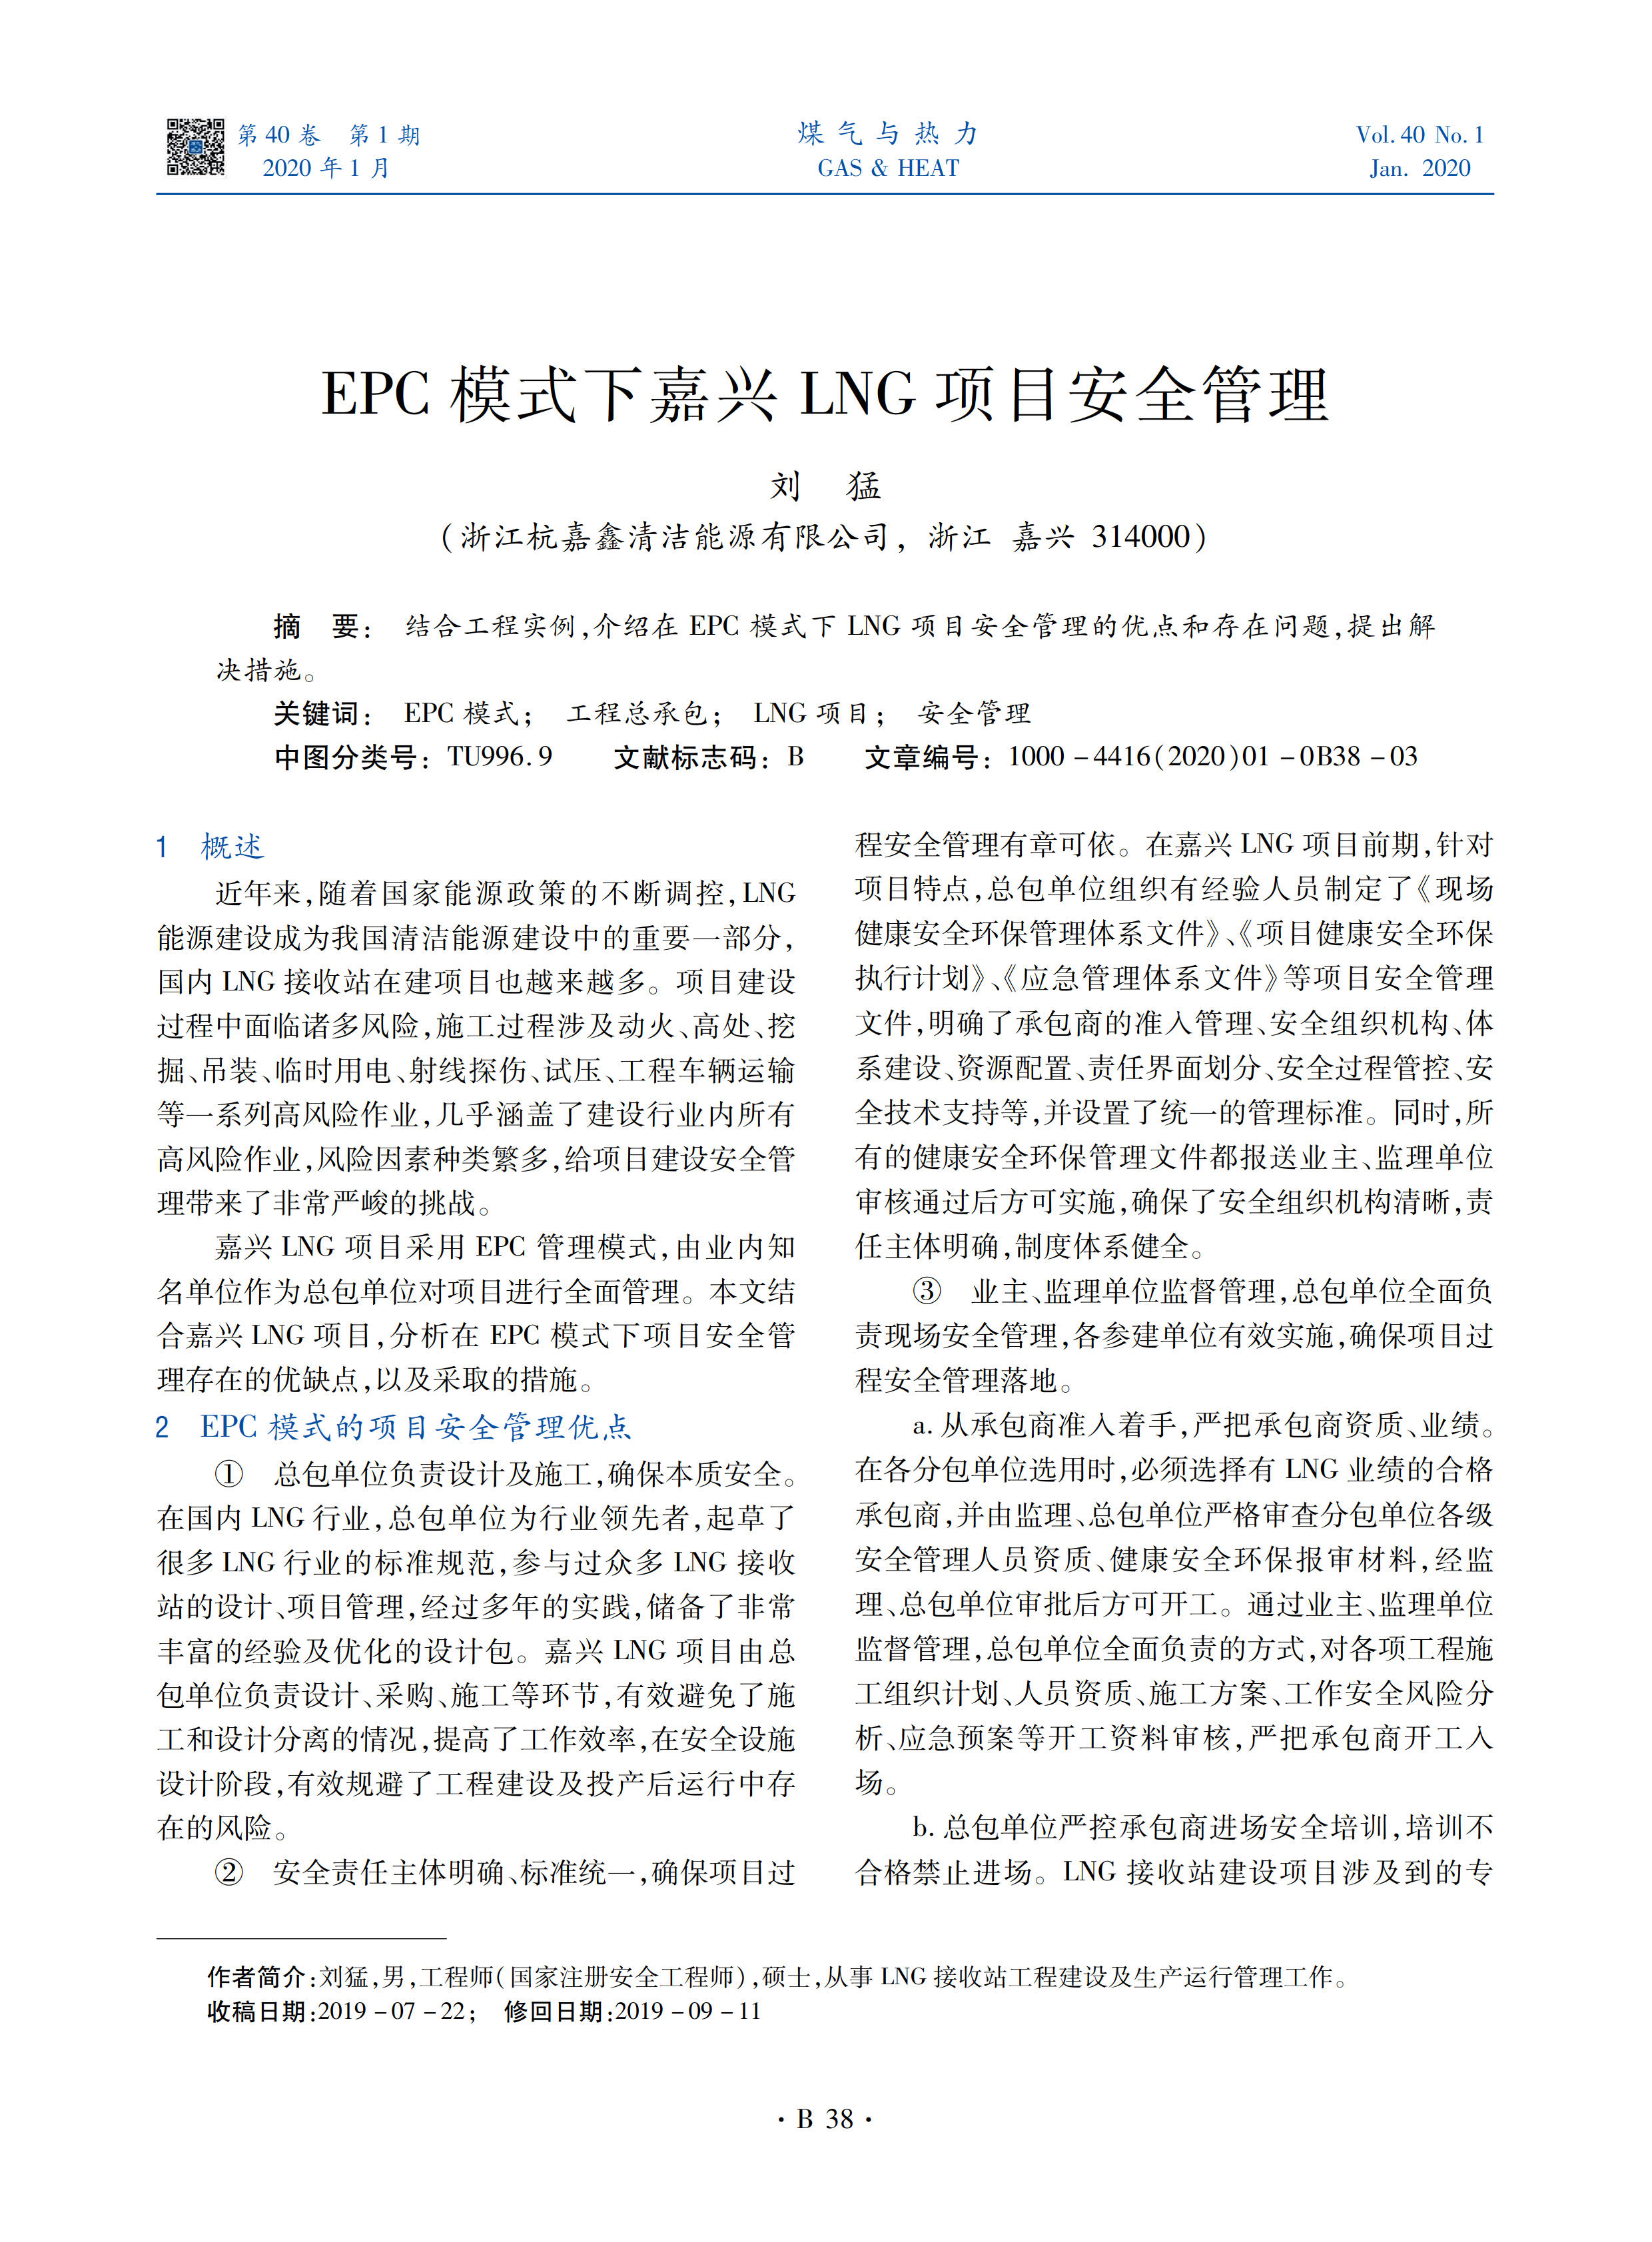 结合工程实例，介绍在EPC模式下LNG项目安全管理的优点和存在问题，提出解决措施。